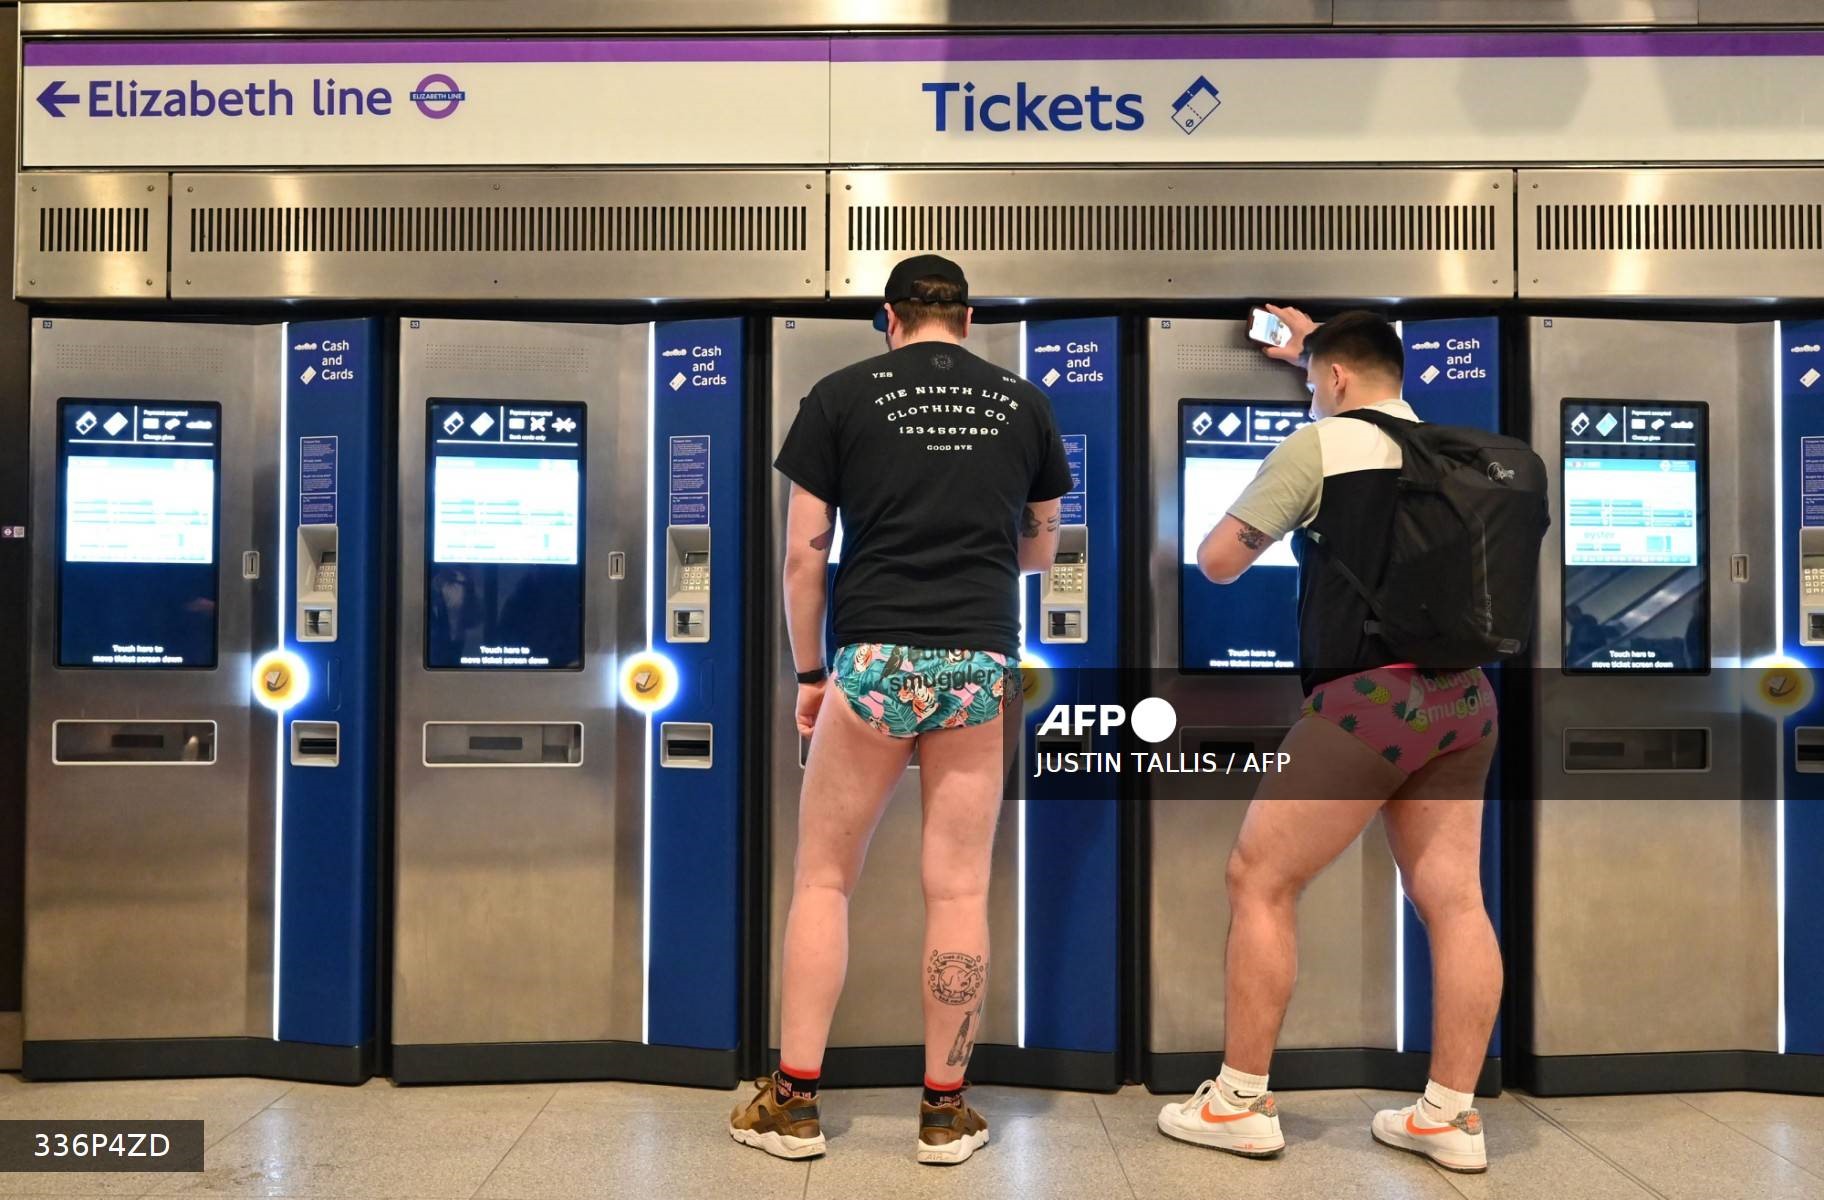 Hành khách tham gia “Ngày không mặc quần” trên tàu điện ngầm London mua vé tàu, ngày 8.1.2023. Ảnh: AFP